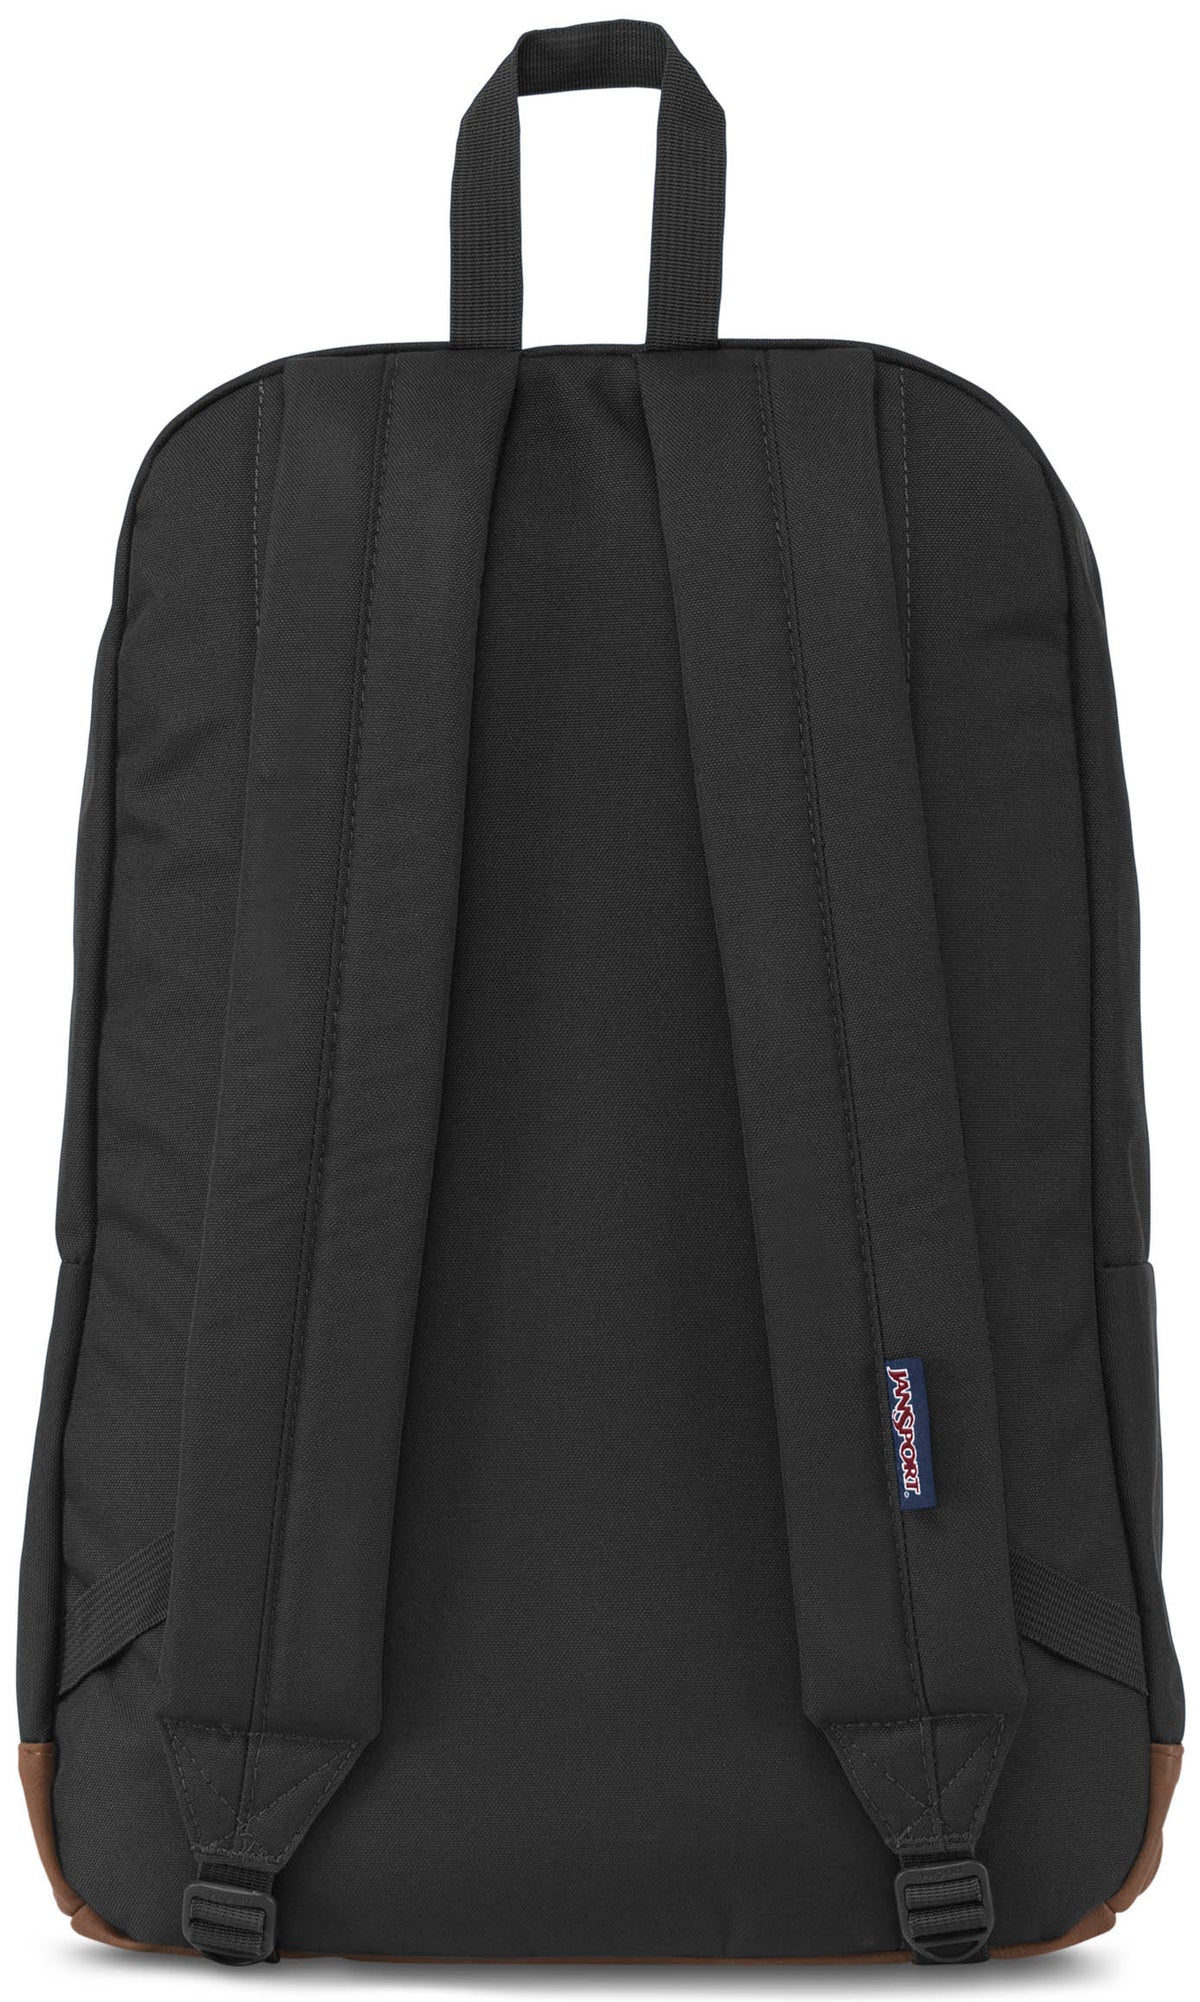 Jansport Cortlandt Backpack - Black